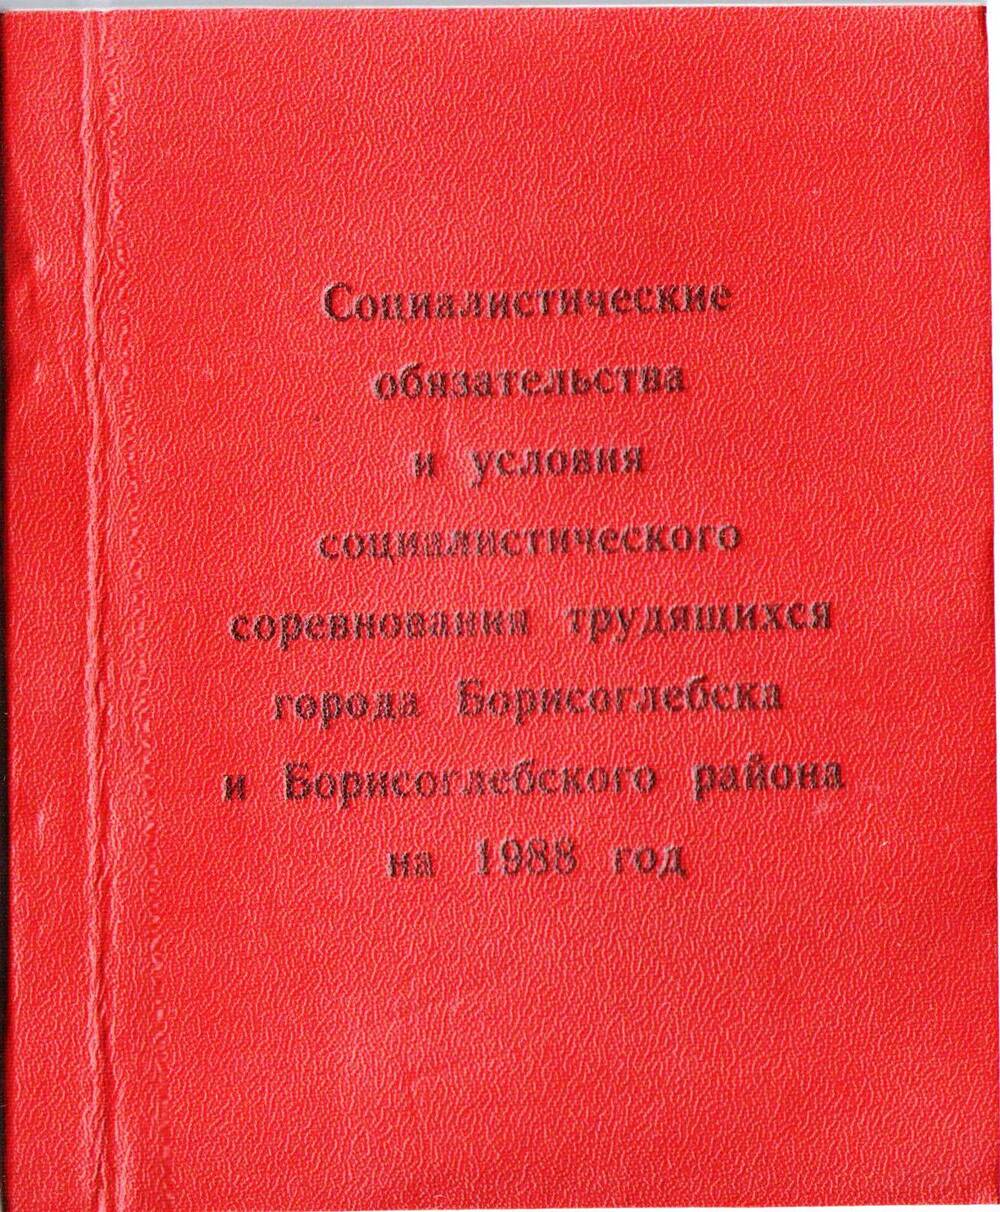 Книга Социалистические обязательства и условия социалистического соревнования трудящихся города Борисоглебска и Борисоглебского района на 1988 год.